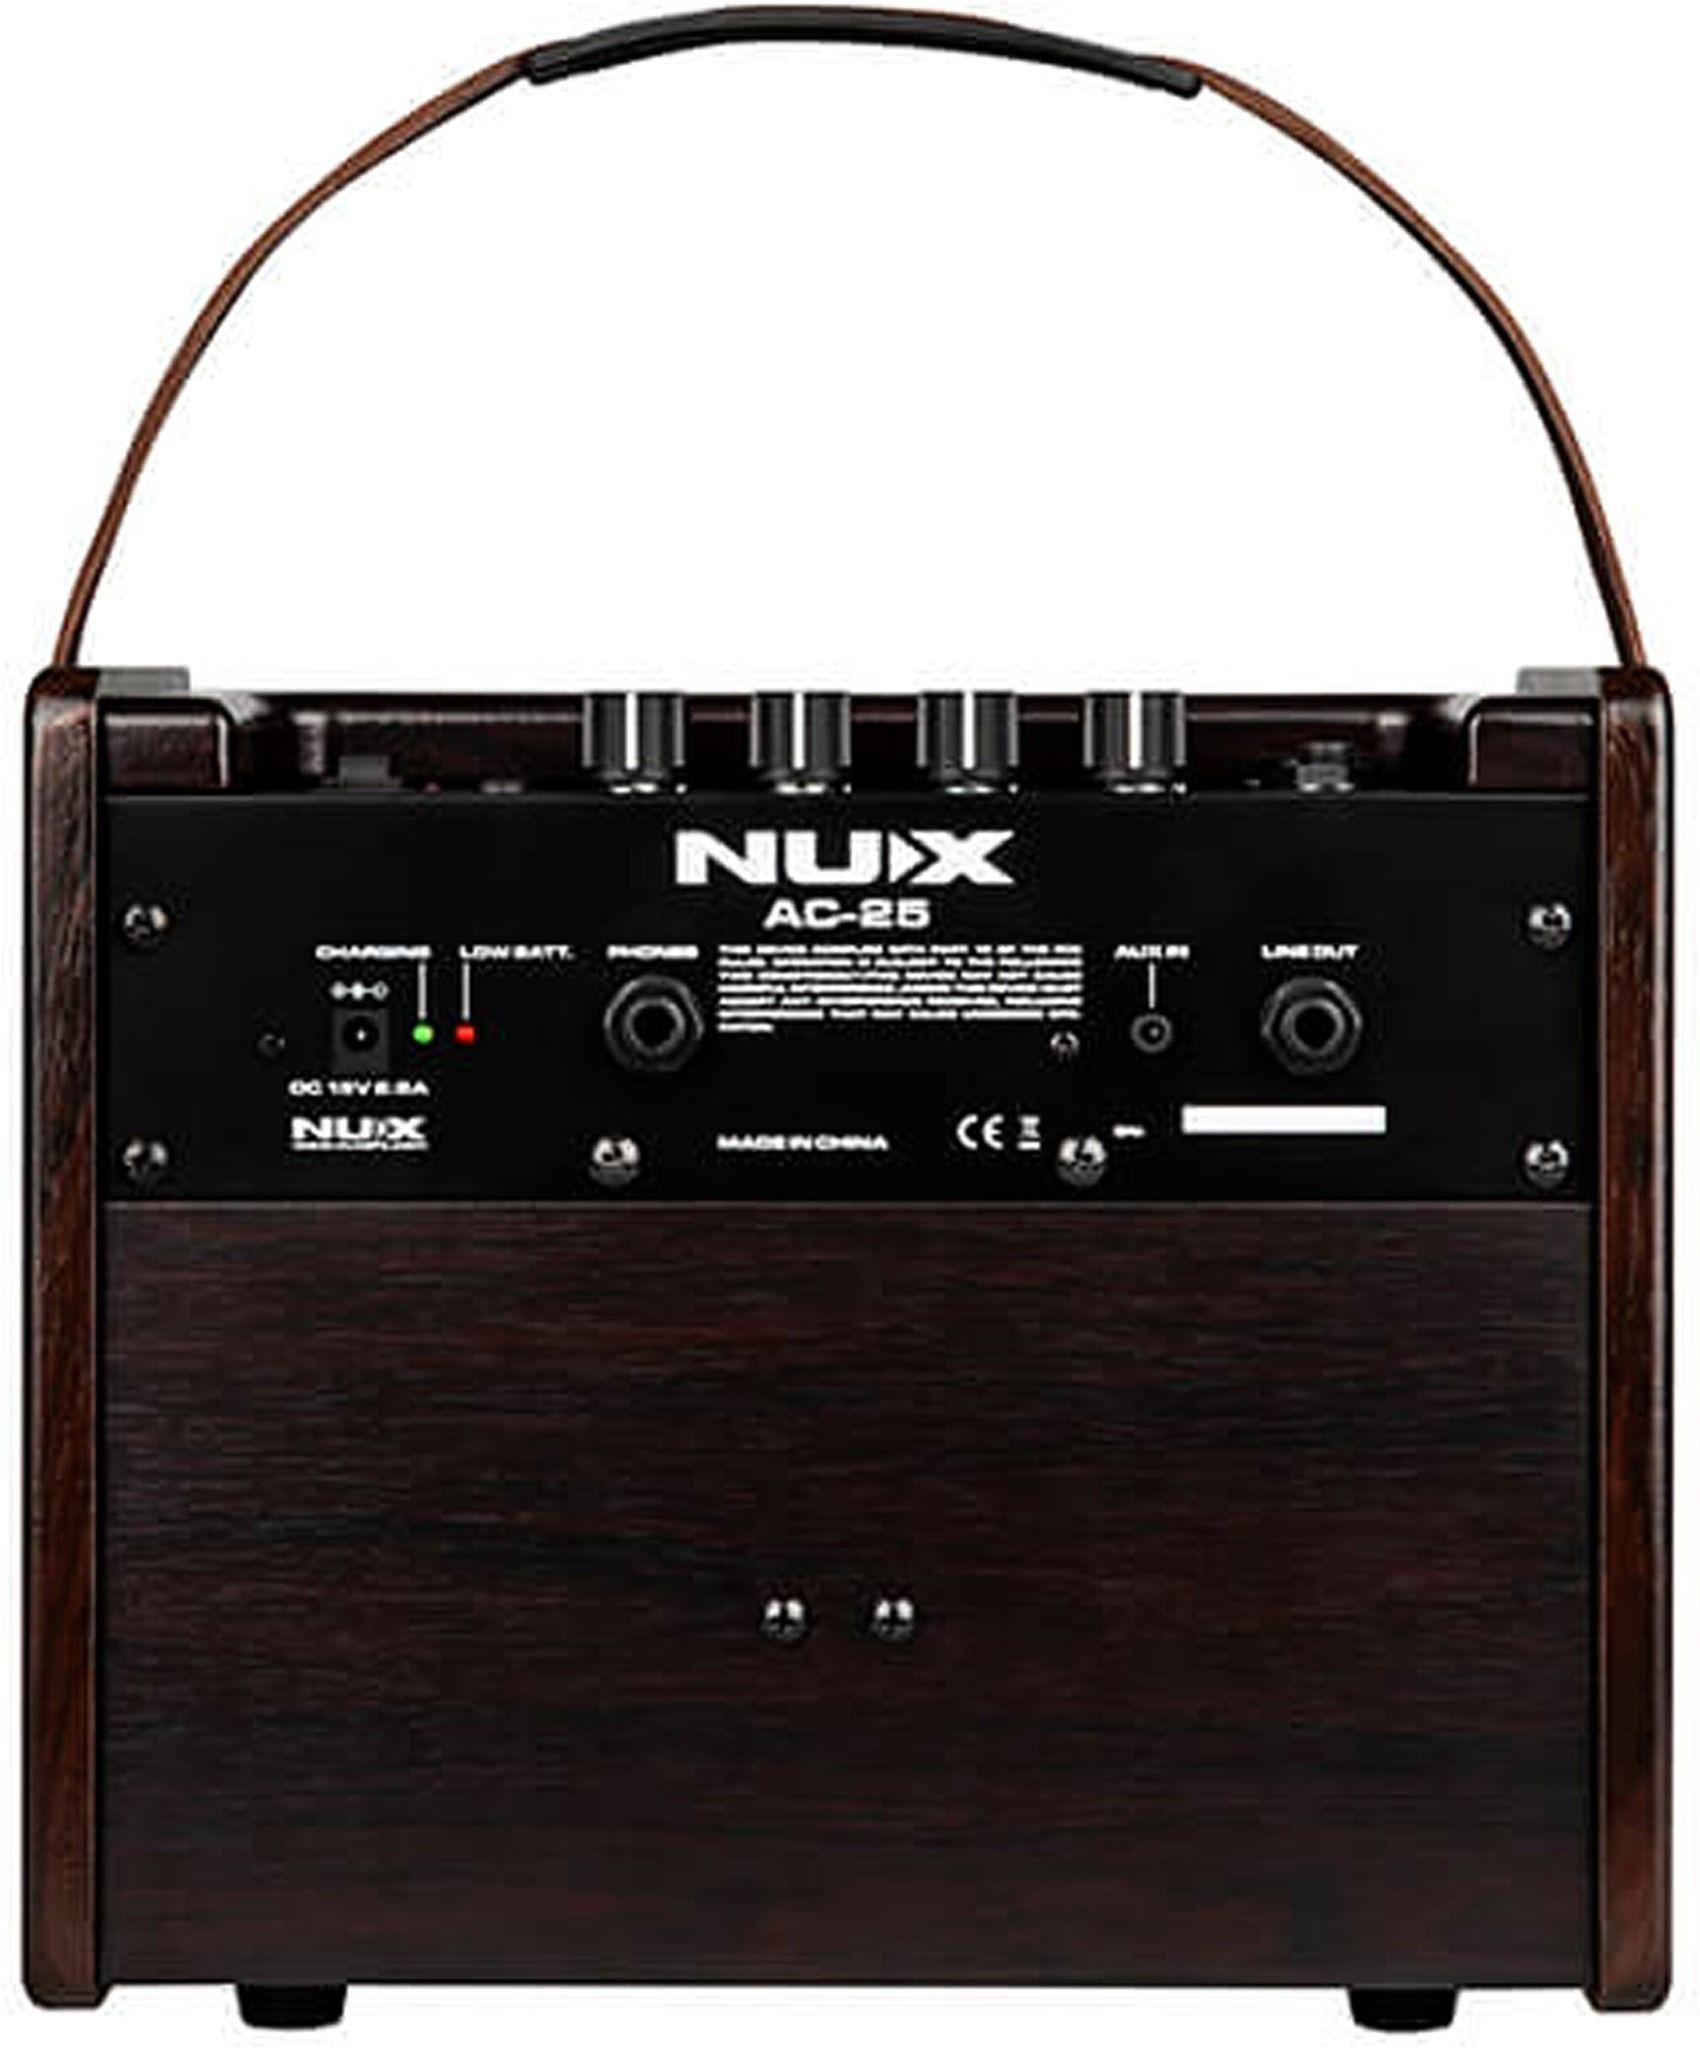  NUX Acoustic Guitar Amplifier AC-25 